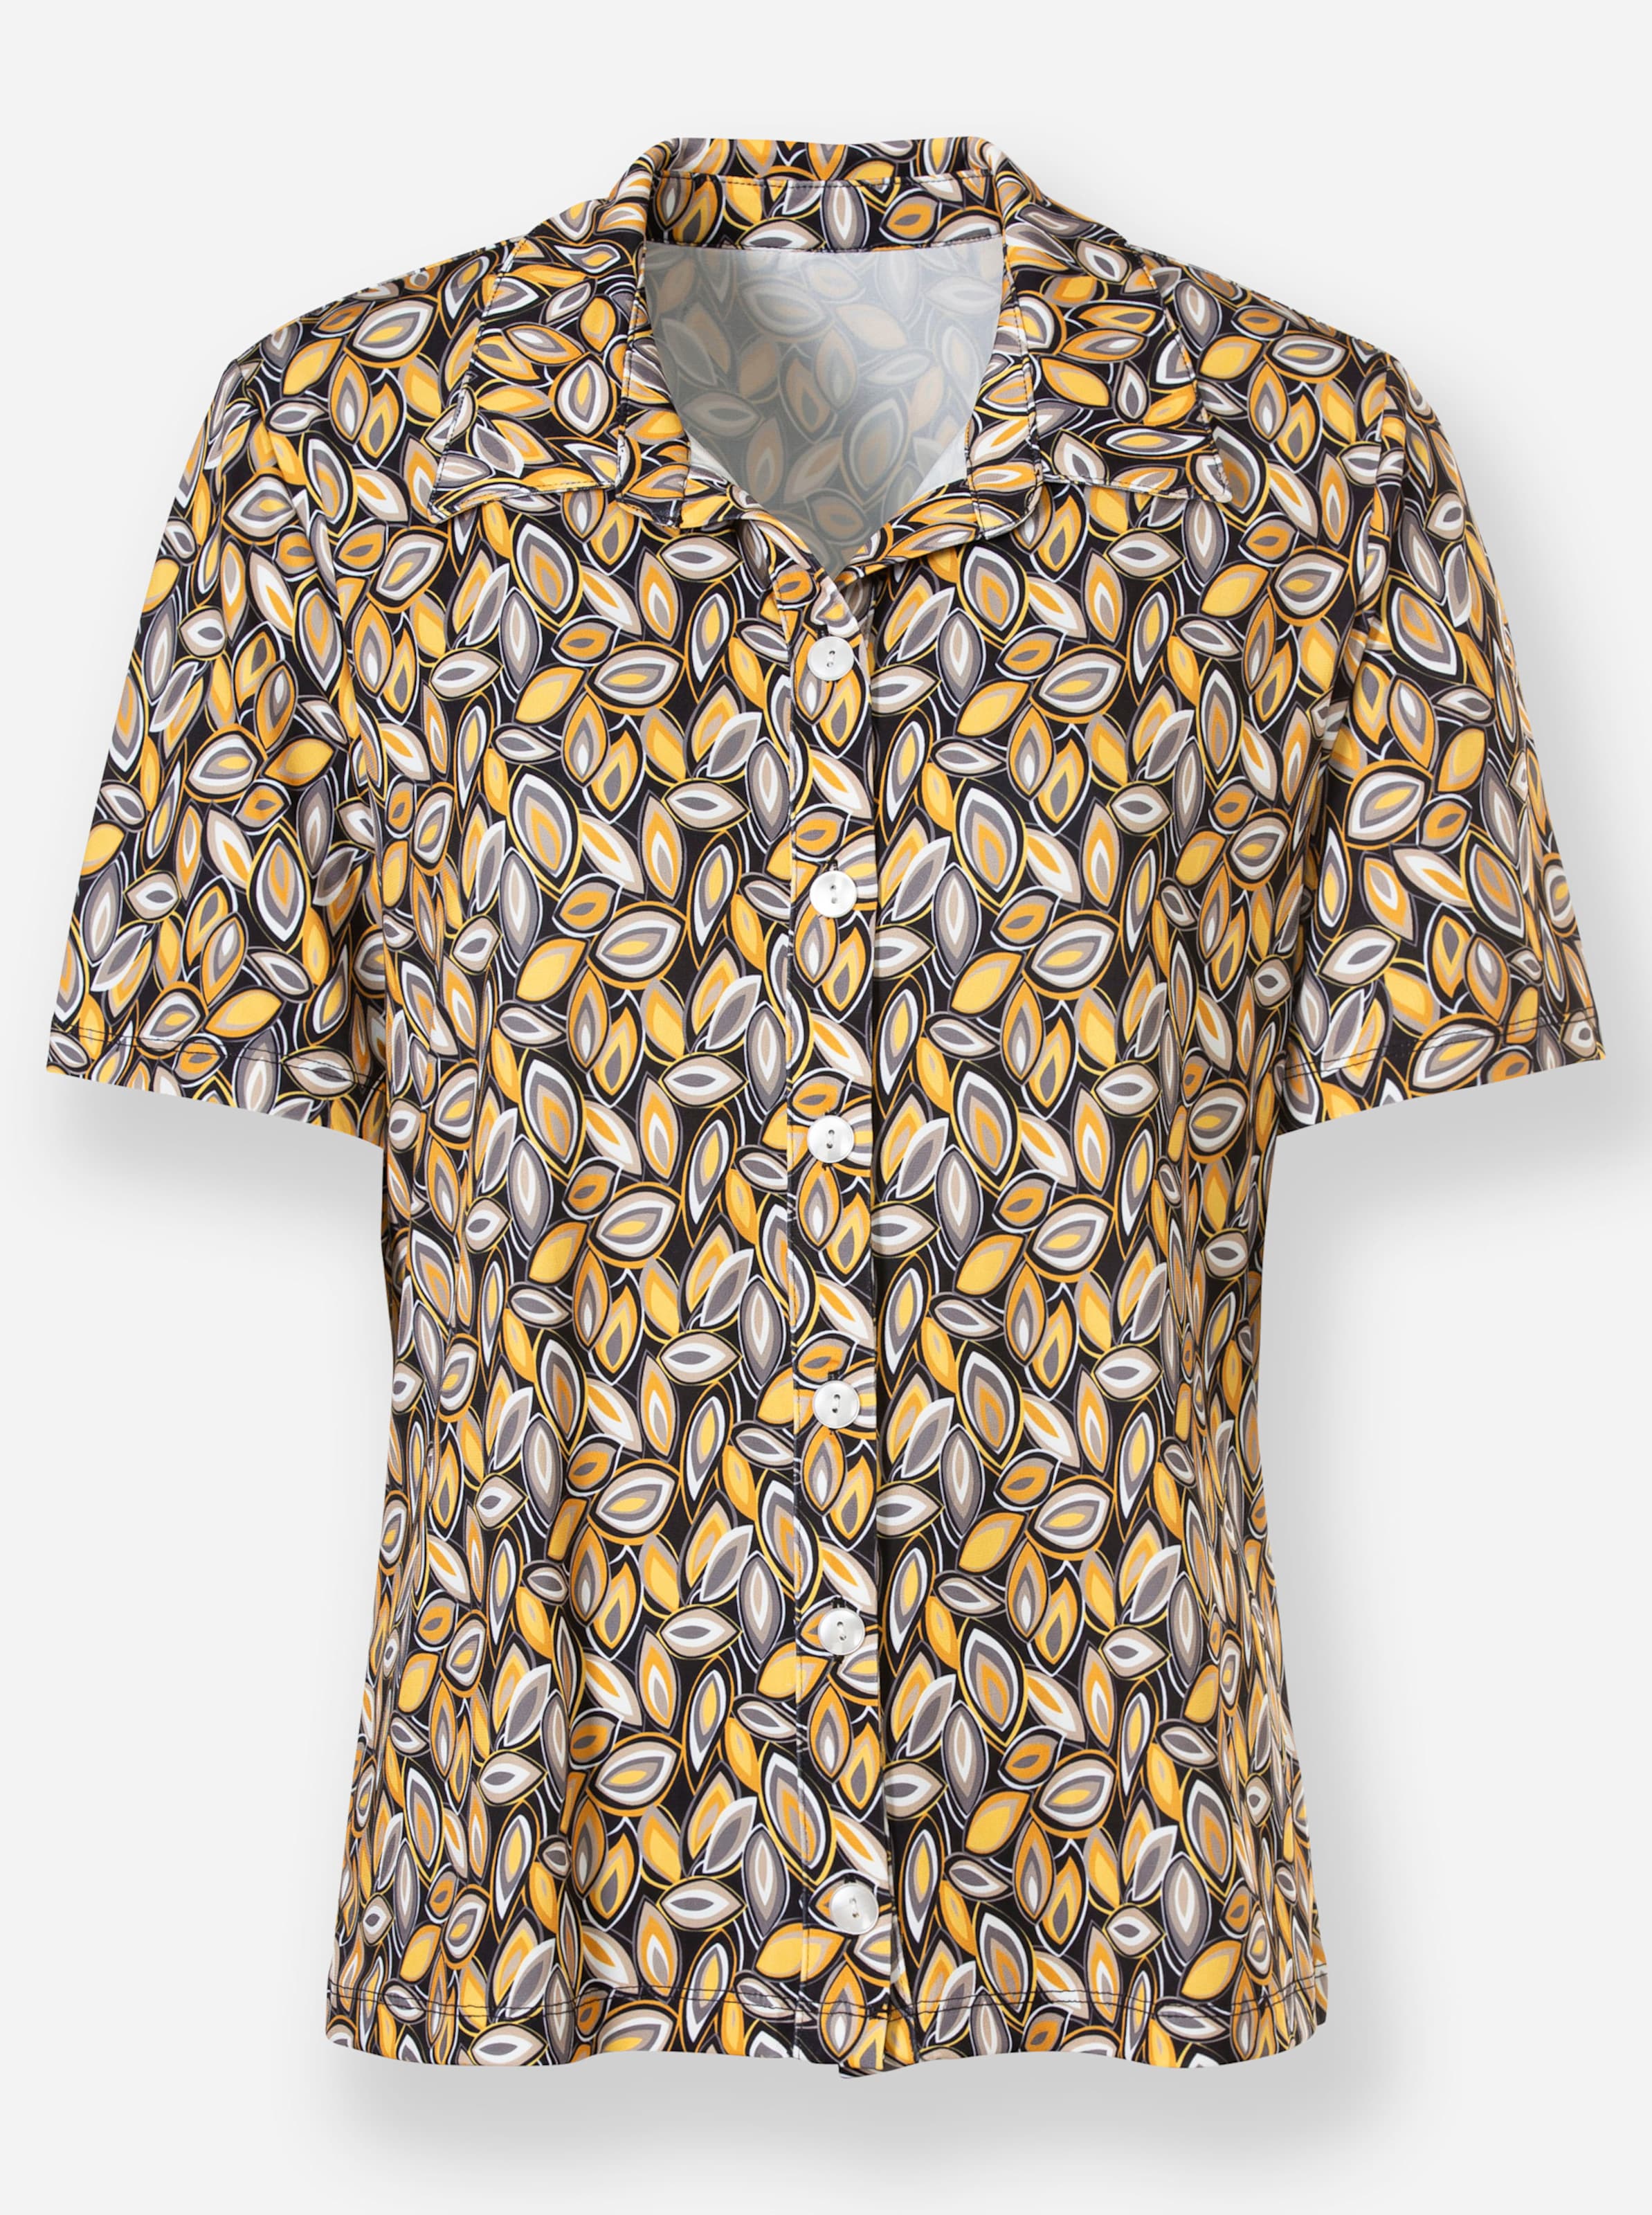 Witt Weiden Damen Jersey Bluse gelb grau bedruckt  - Onlineshop Witt Weiden